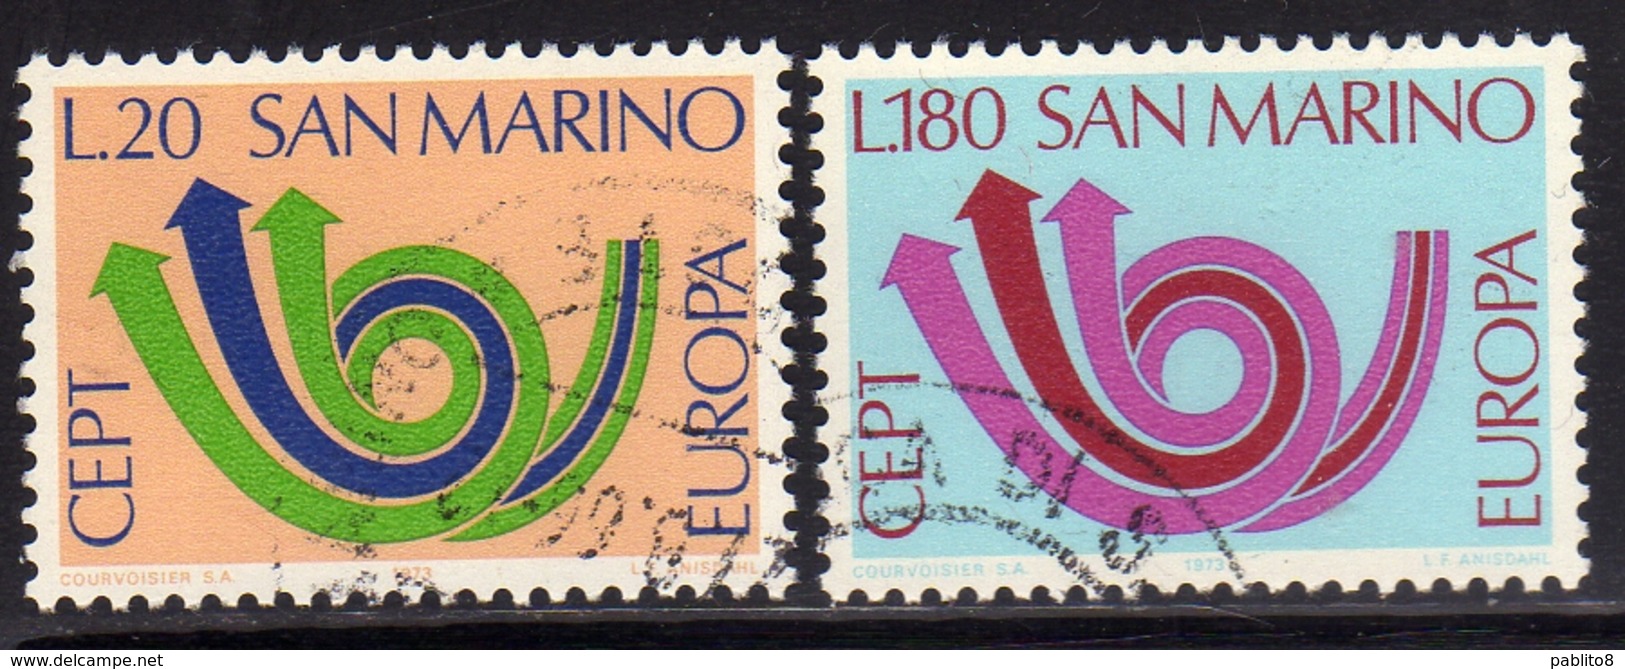 REPUBBLICA DI SAN MARINO 1973 EUROPA UNITA CEPT SERIE COMPLETA COMPLETE SET USATA USED OBLITERE' - Used Stamps